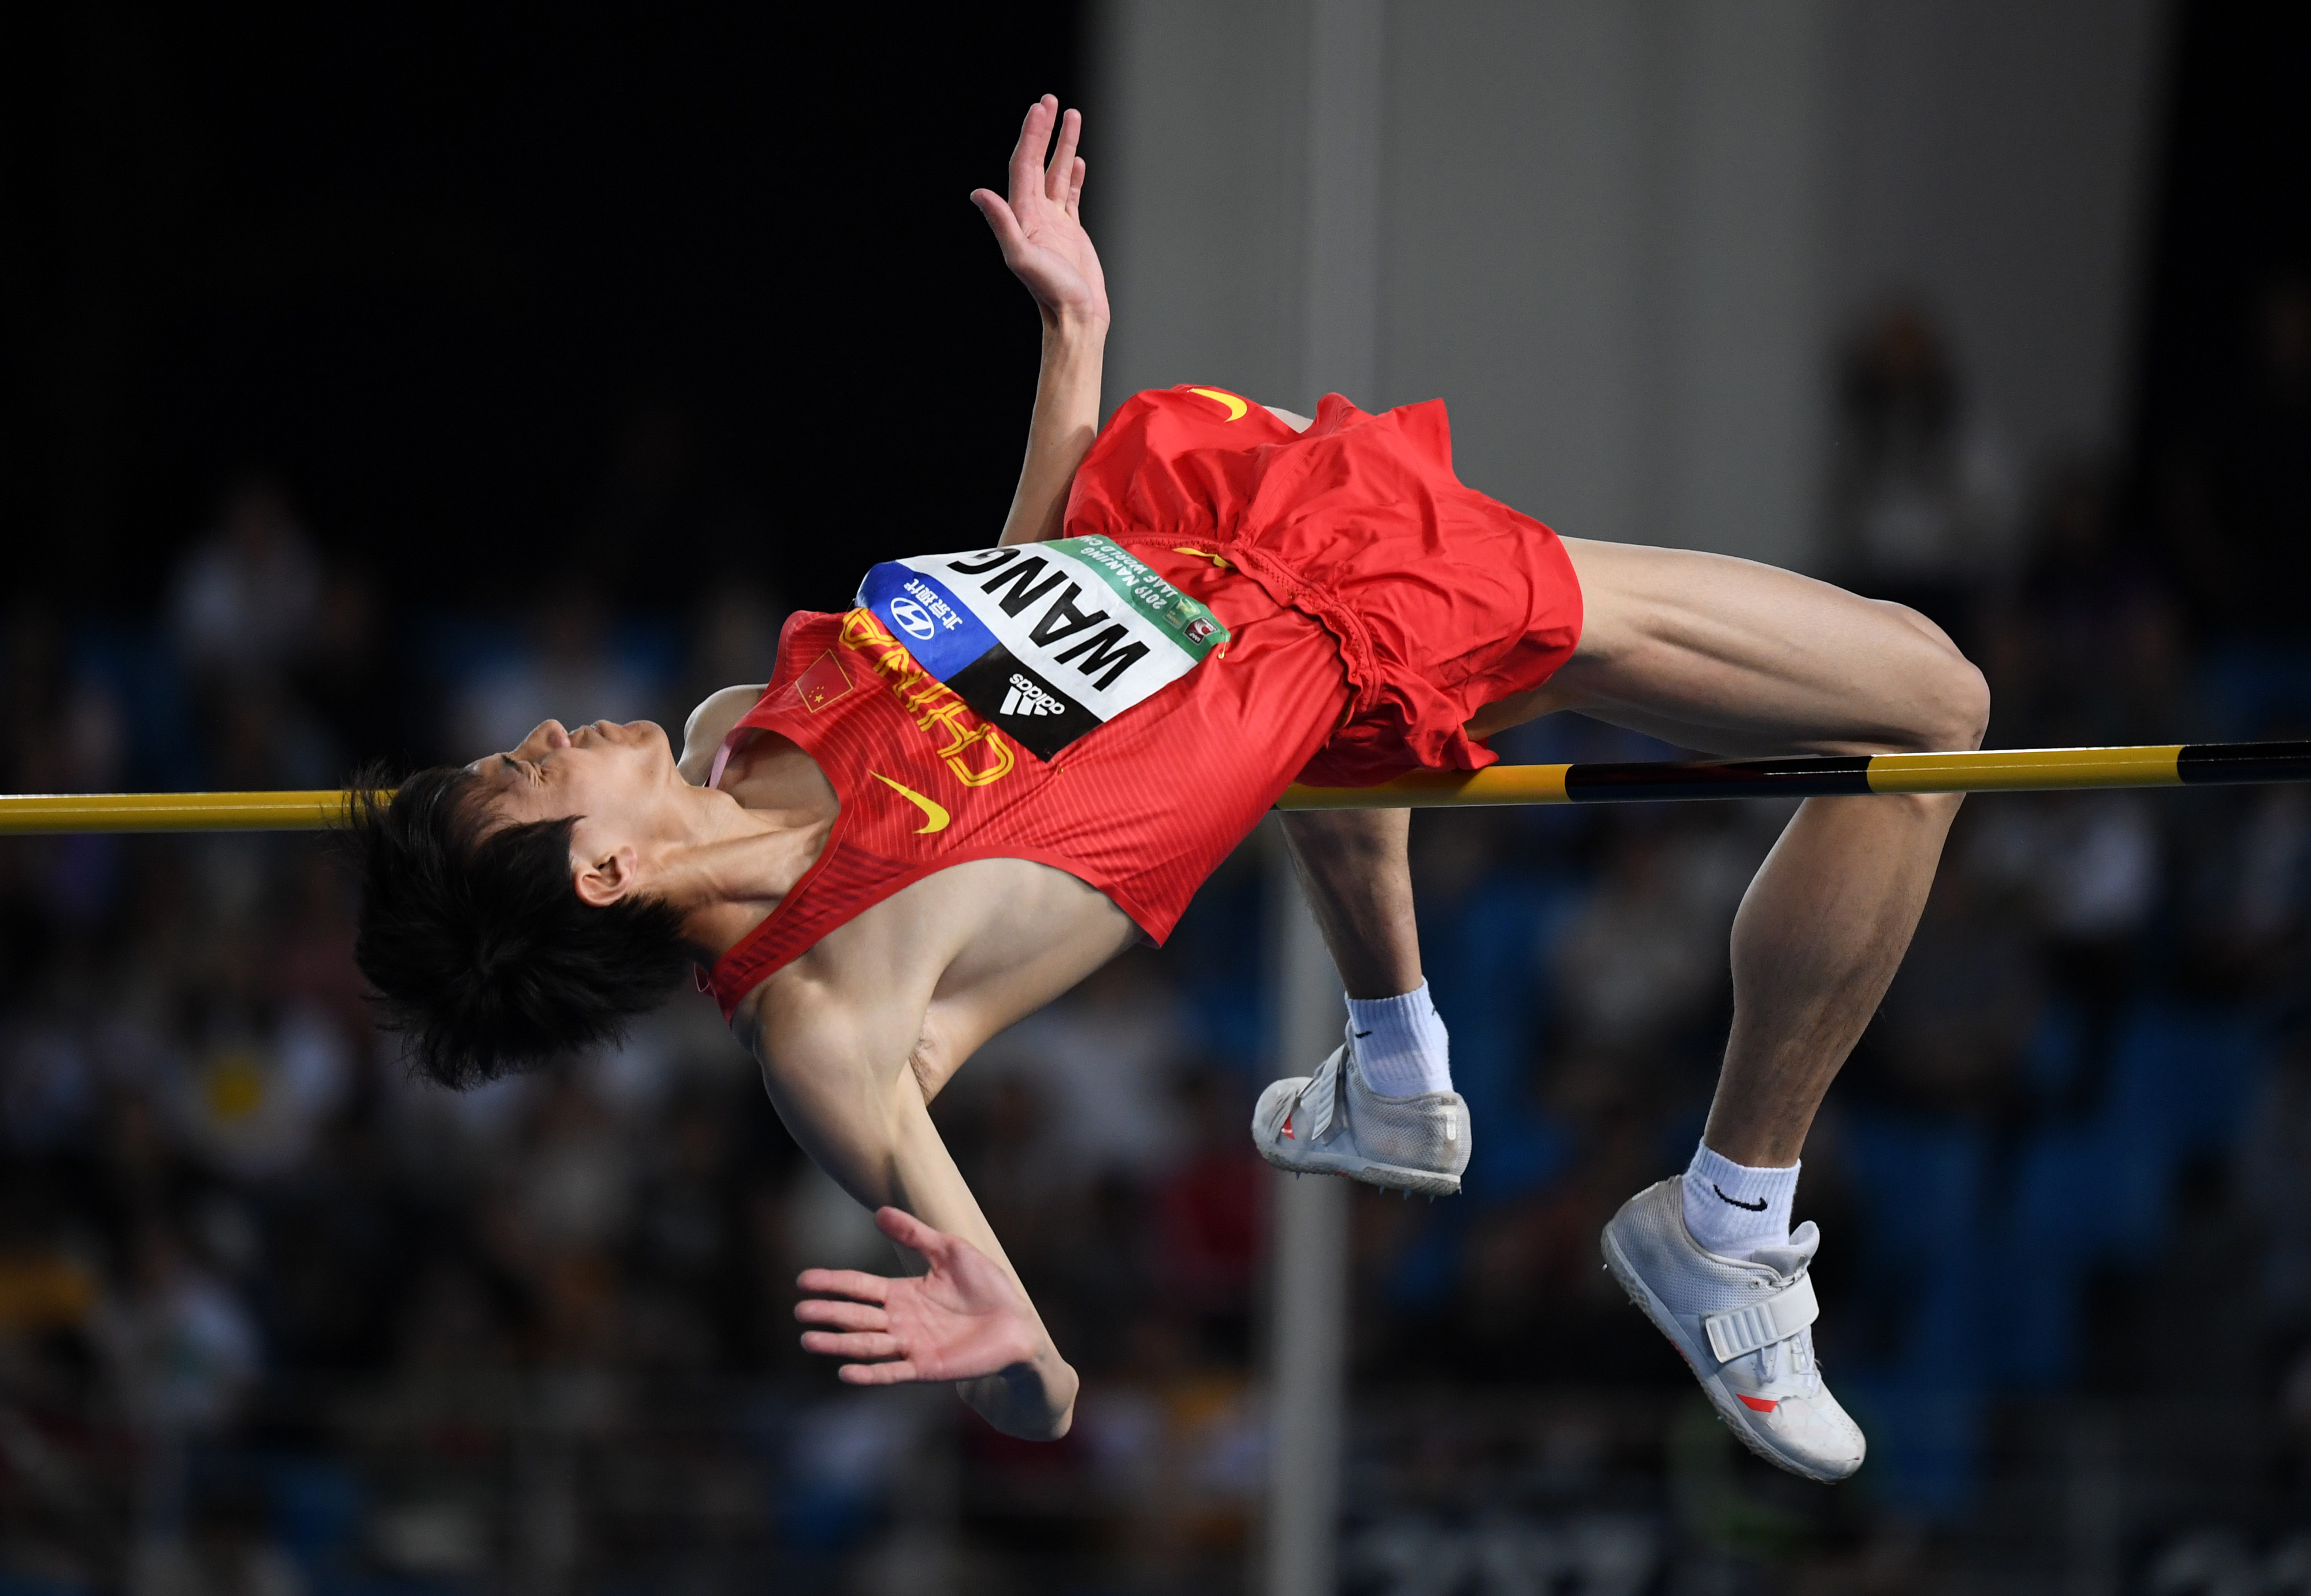 中国队获男子4x100米接力第四名，平奥运最好成绩